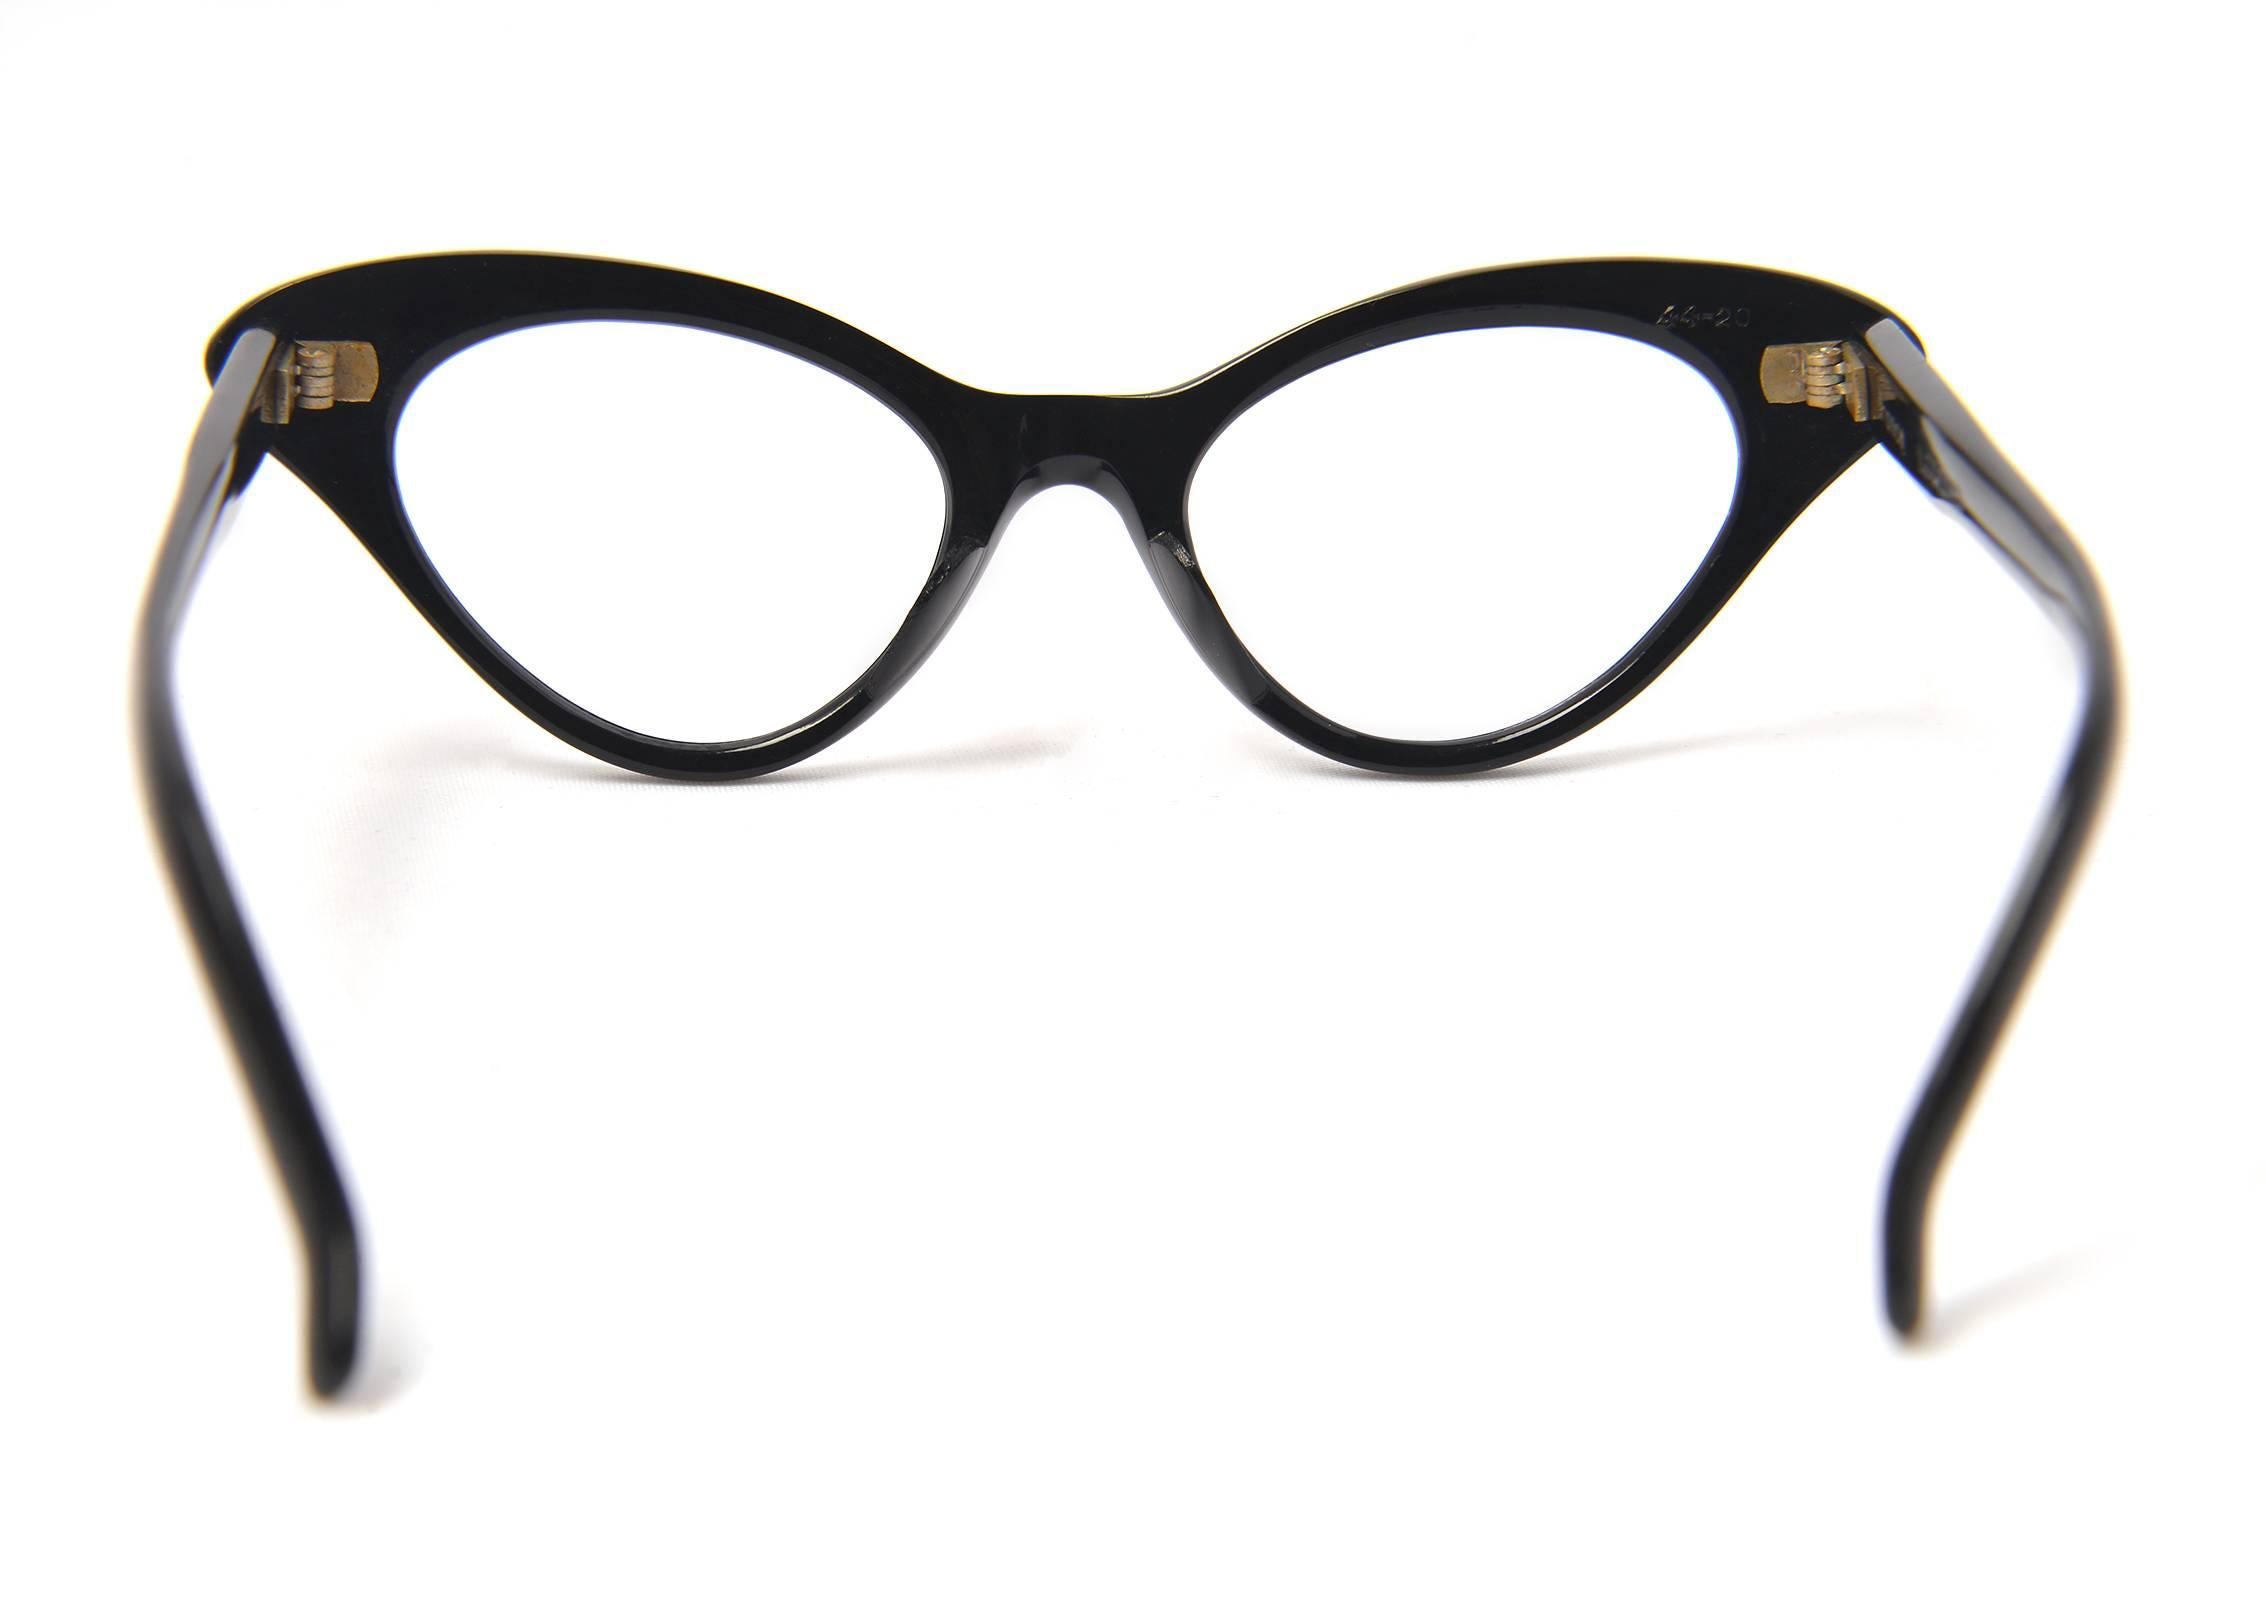 1960s cat eye glasses